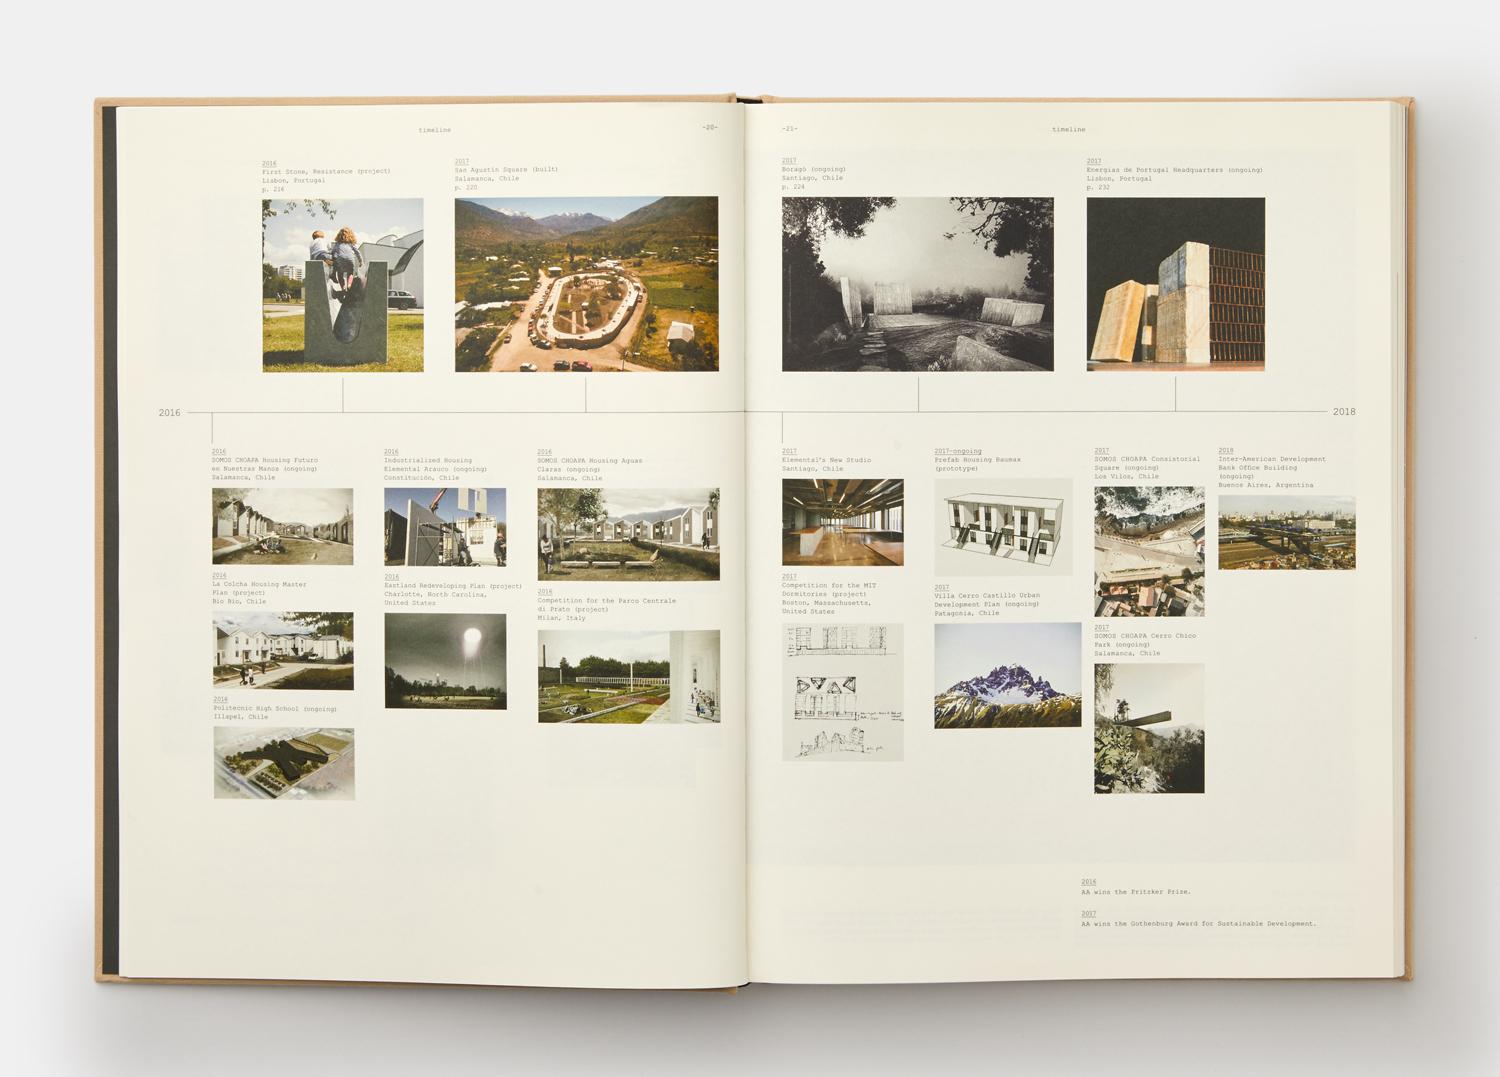 Eine spektakuläre, bildreiche Monografie über eines der visionärsten Architekturbüros des 21. Jahrhunderts unter der Leitung des Pritzker-Preisträgers von 2016, Alejandro Aravena Elemental mit Sitz in Santiago, Chile, verkörpert eine neue Generation